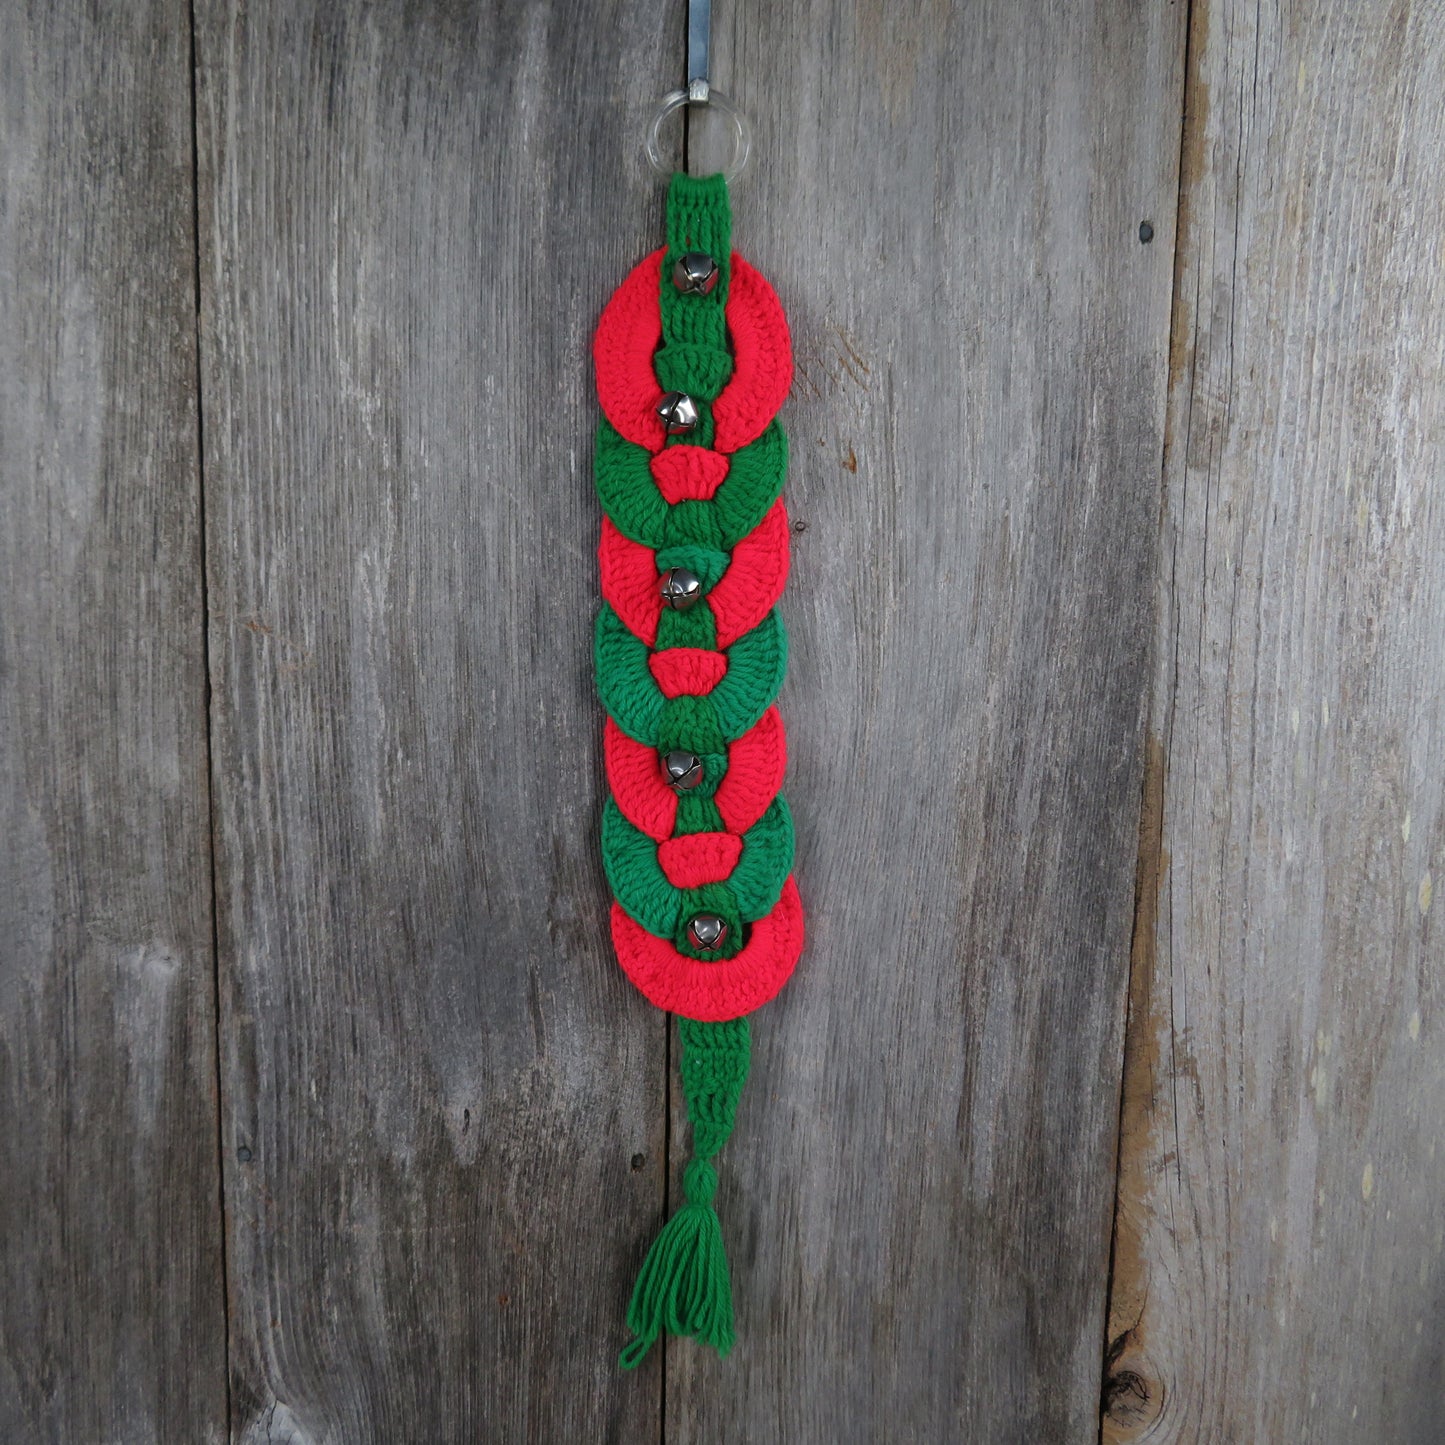 Vintage Crochet Christmas Door Hanger Wreath Bell Handmade Red Green White Rings Knit - At Grandma's Table